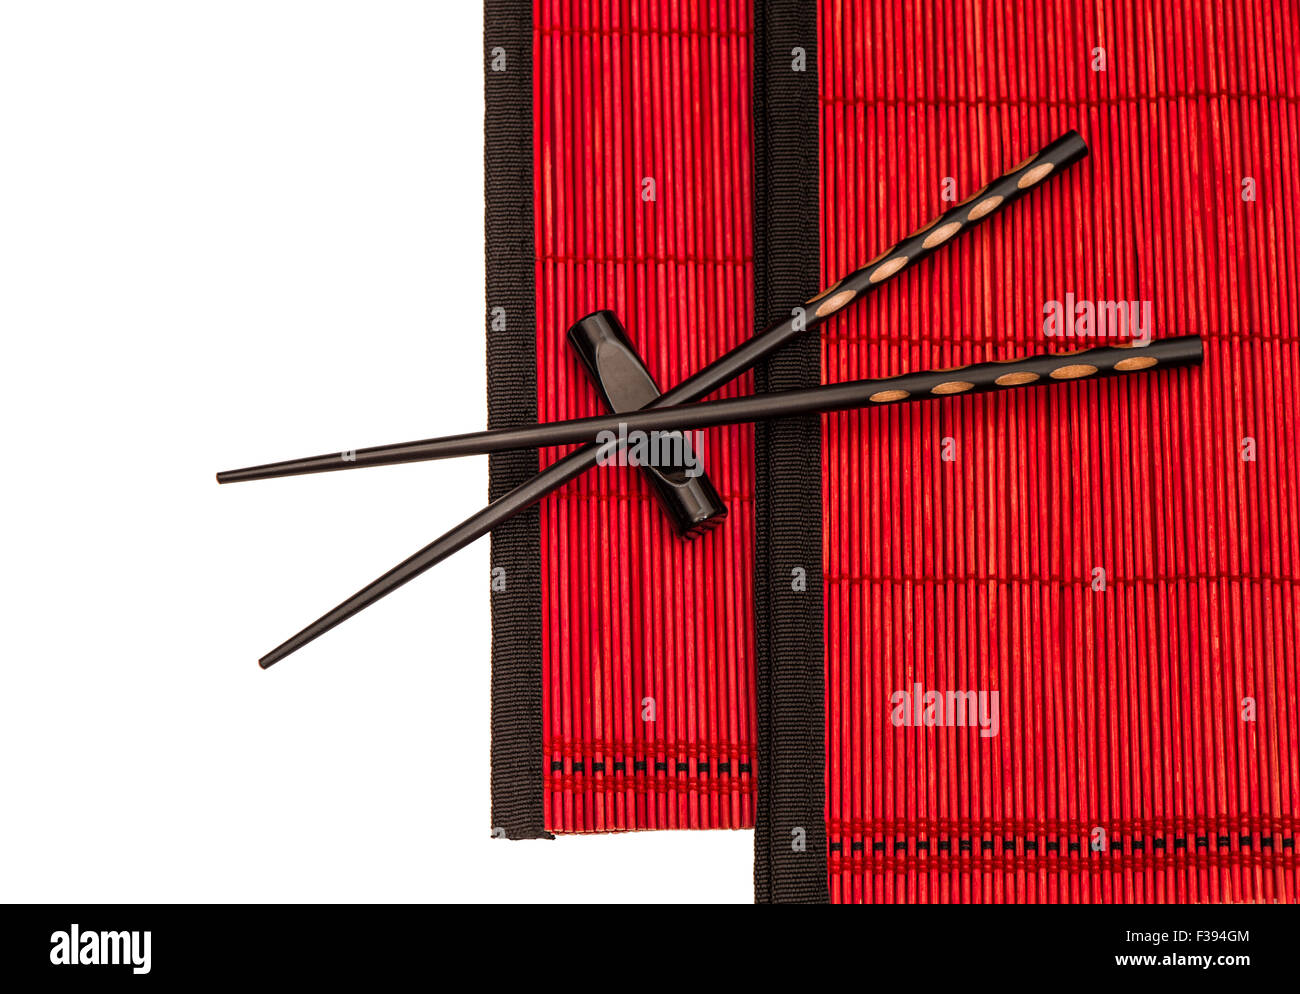 Des baguettes chinoises sur les nattes de bambou rouge. Table de style asiatique place setting Banque D'Images